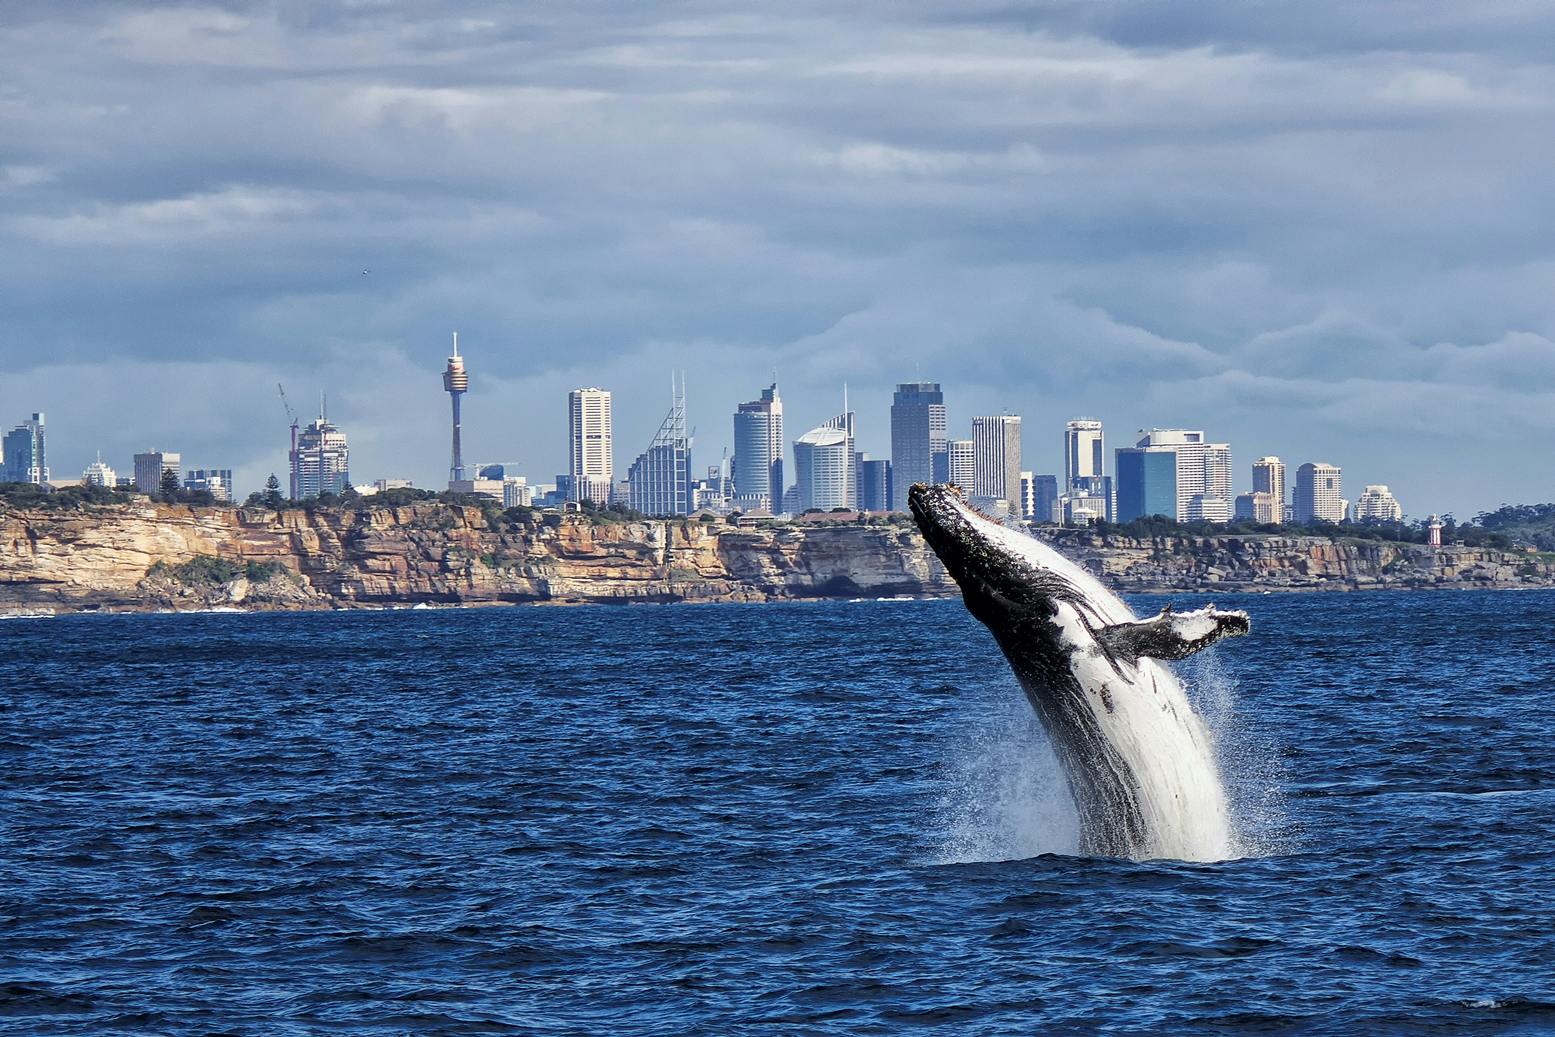 Crucero de avistamiento de ballenas en Sídney con desayuno o almuerzo.